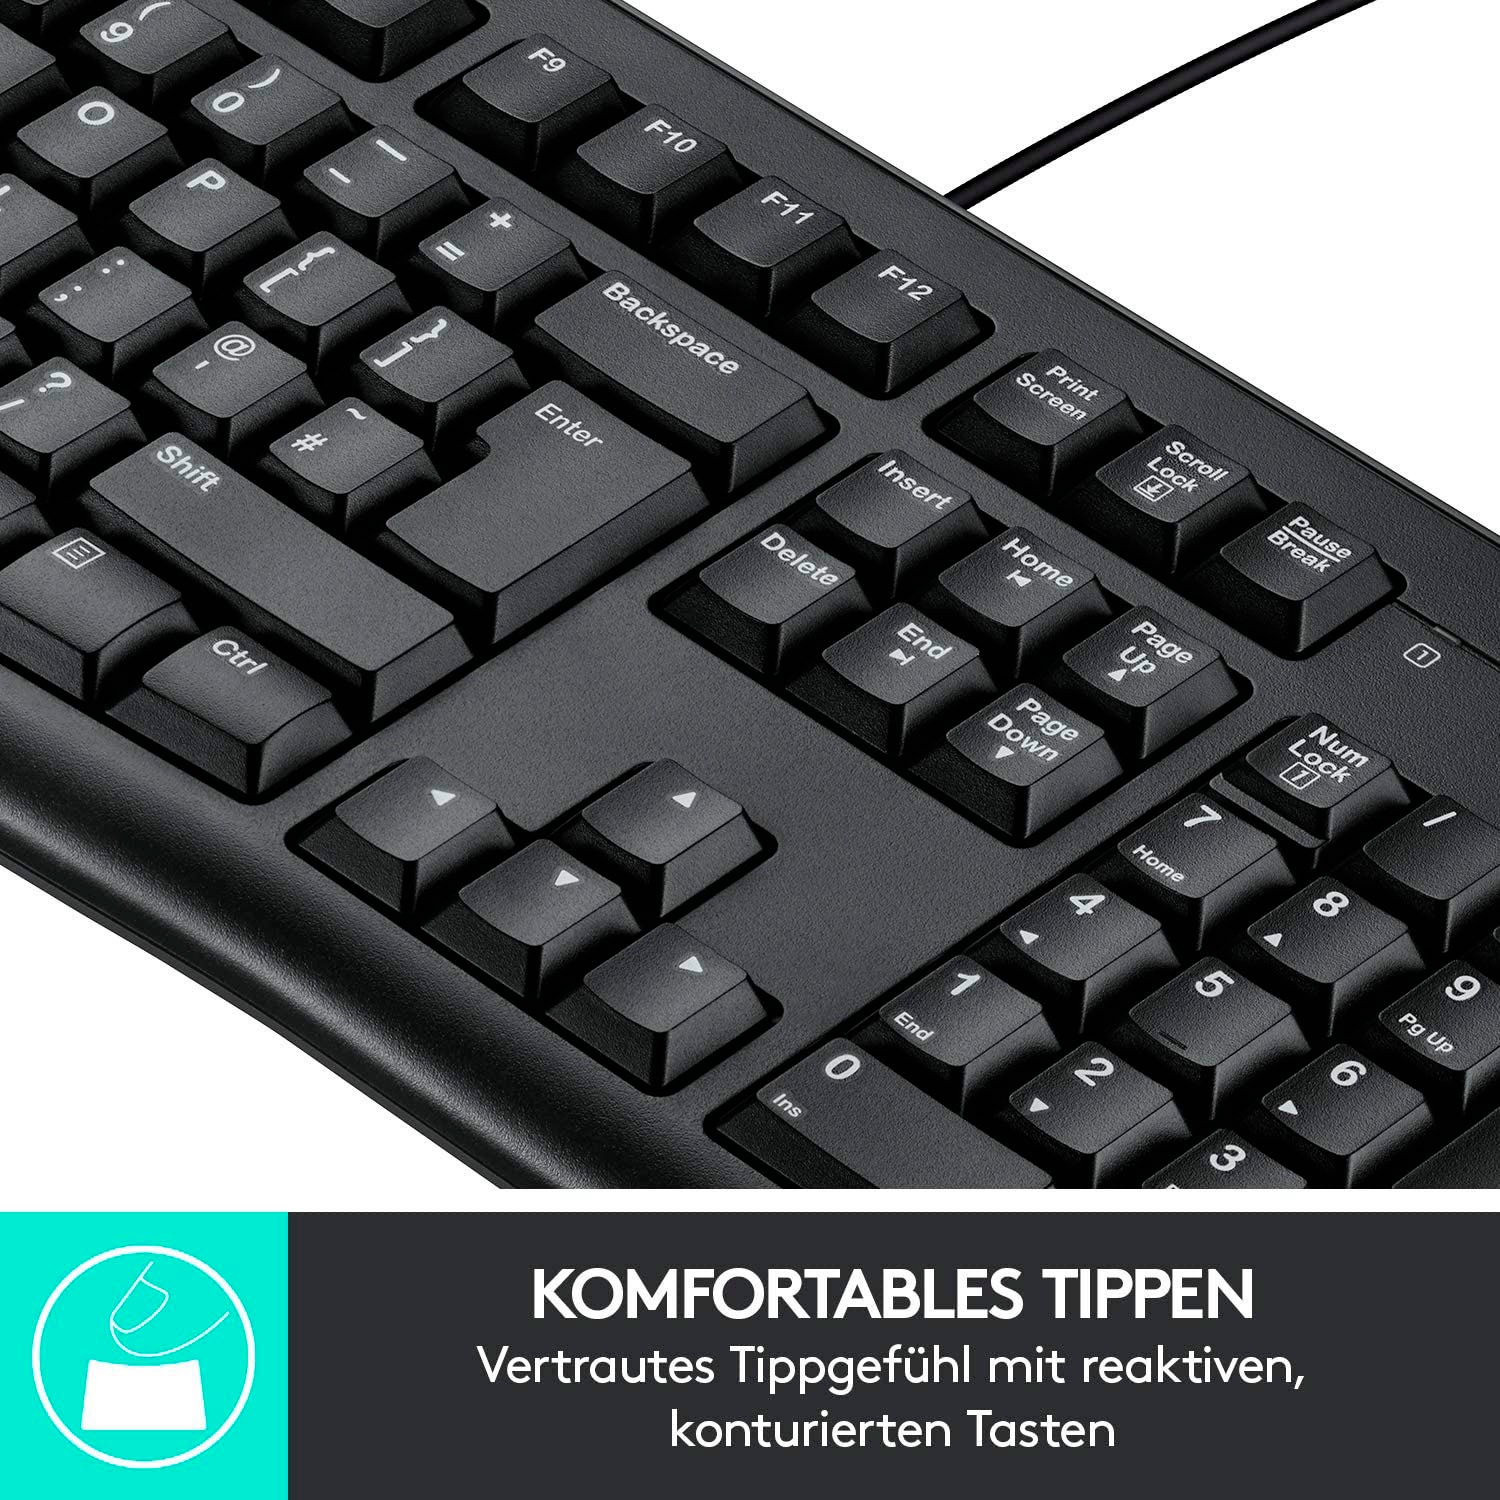 Logitech PC-Tastatur »Keyboard K120 - DE-Layout«, (Ziffernblock),  Nummernblock jetzt bestellen bei OTTO